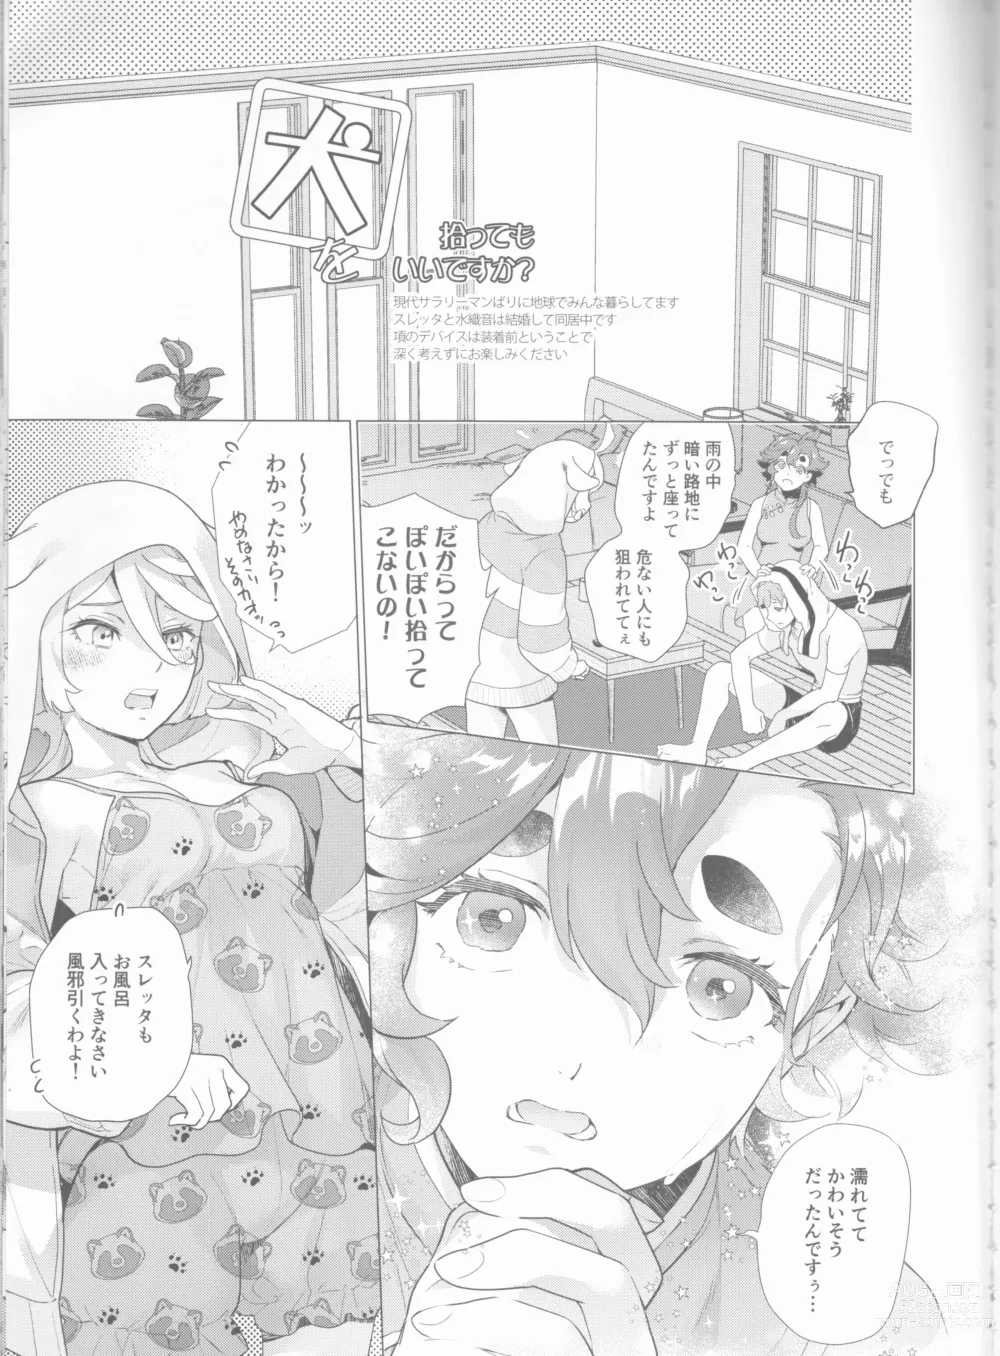 Page 4 of doujinshi Inu o Hirotte mo Ii desu ka